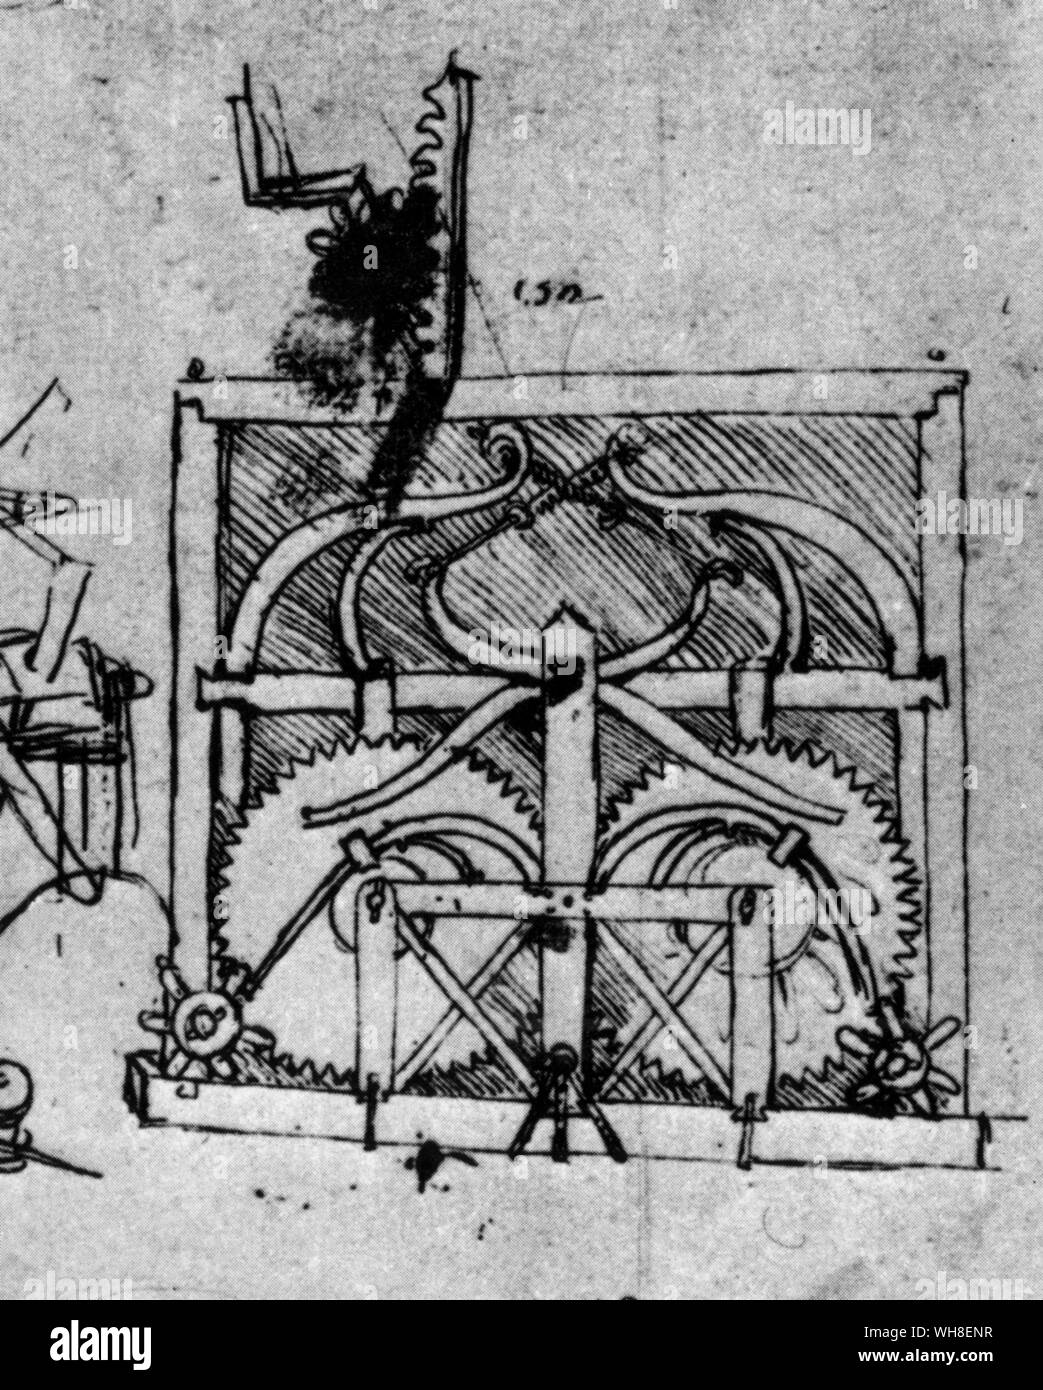 Leonardos Zeichnungen für das Auto. Leonardo da Vinci (1452-1519) war ein italienischer Renaissance Architekt, Musiker, Anatom, Erfinder, Ingenieur, Bildhauer, Geometer und Maler. . . Stockfoto